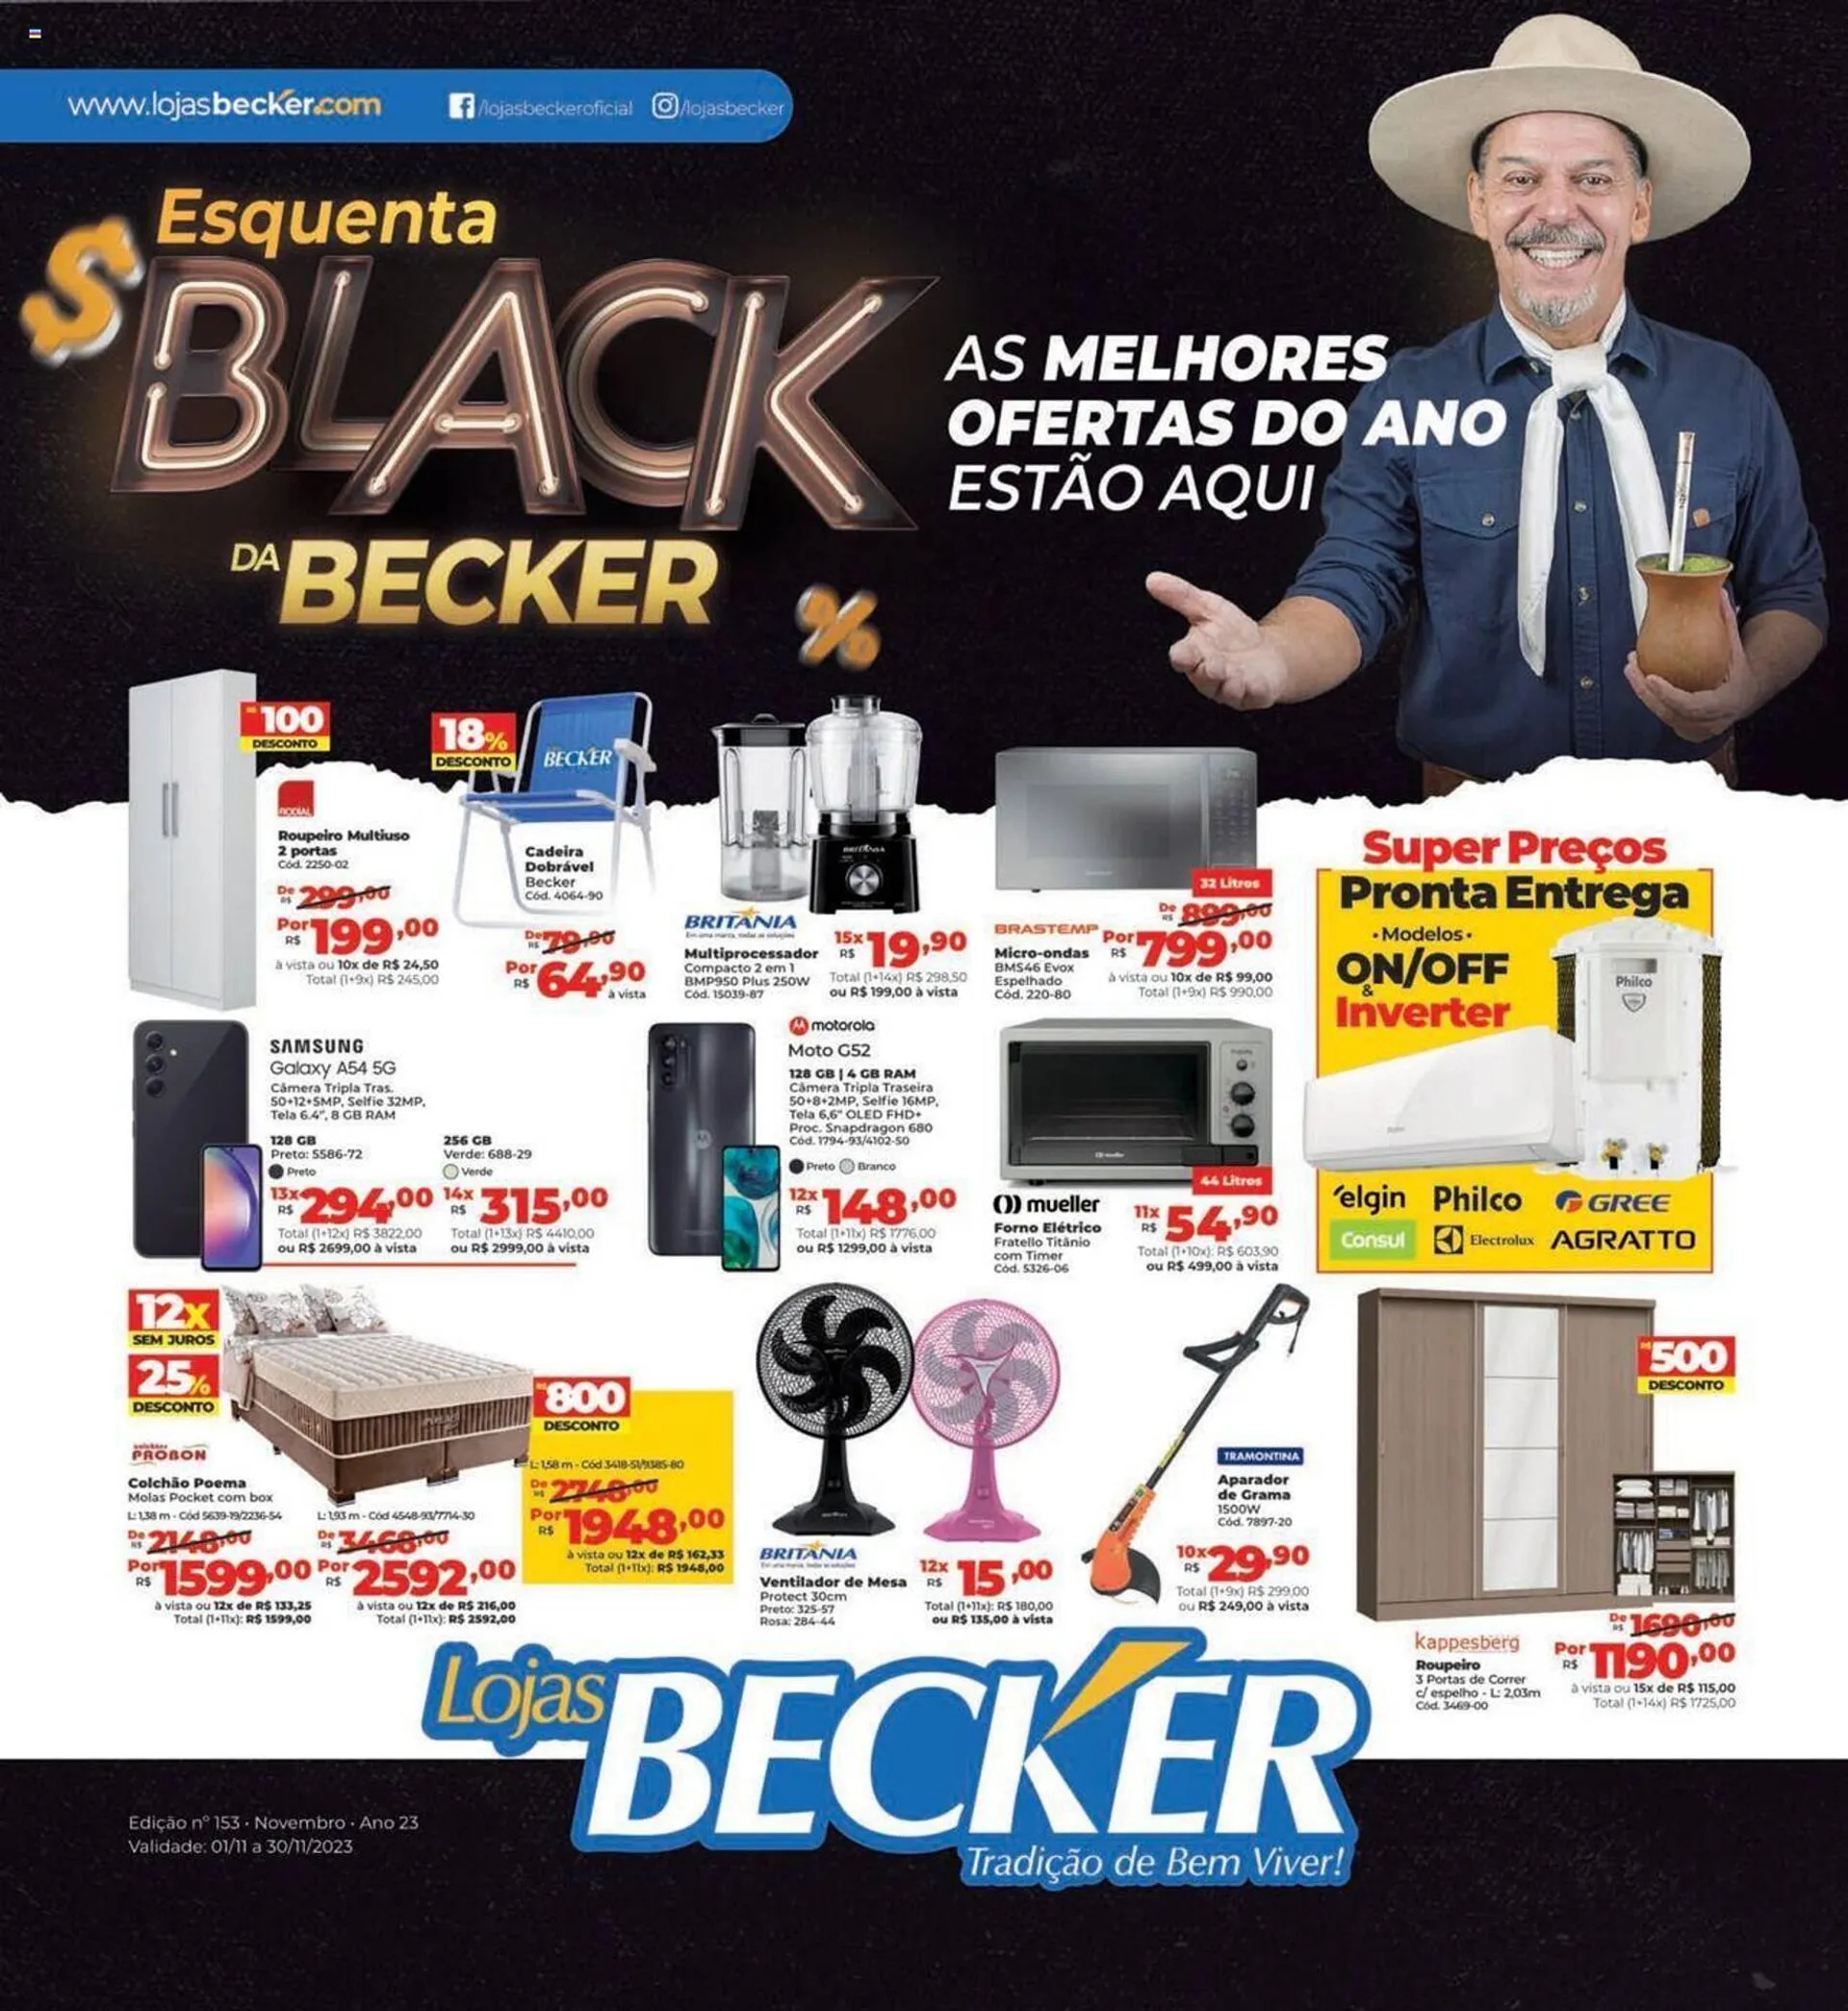 Lojas Becker - Aqui é sempre mais barato